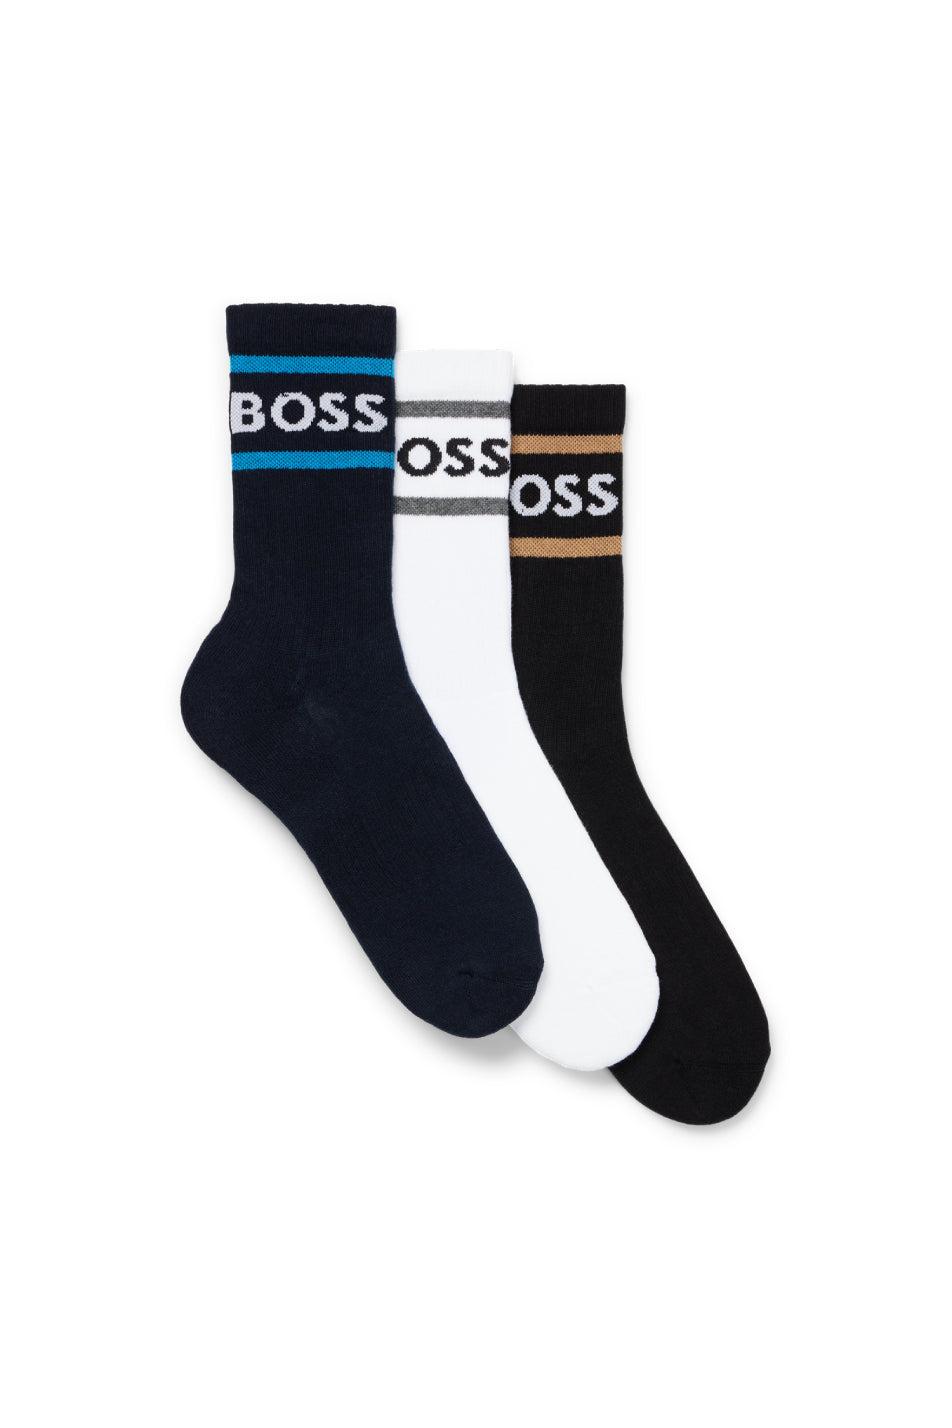 BOSS 3 Pack Men's Rib Stripe Socks